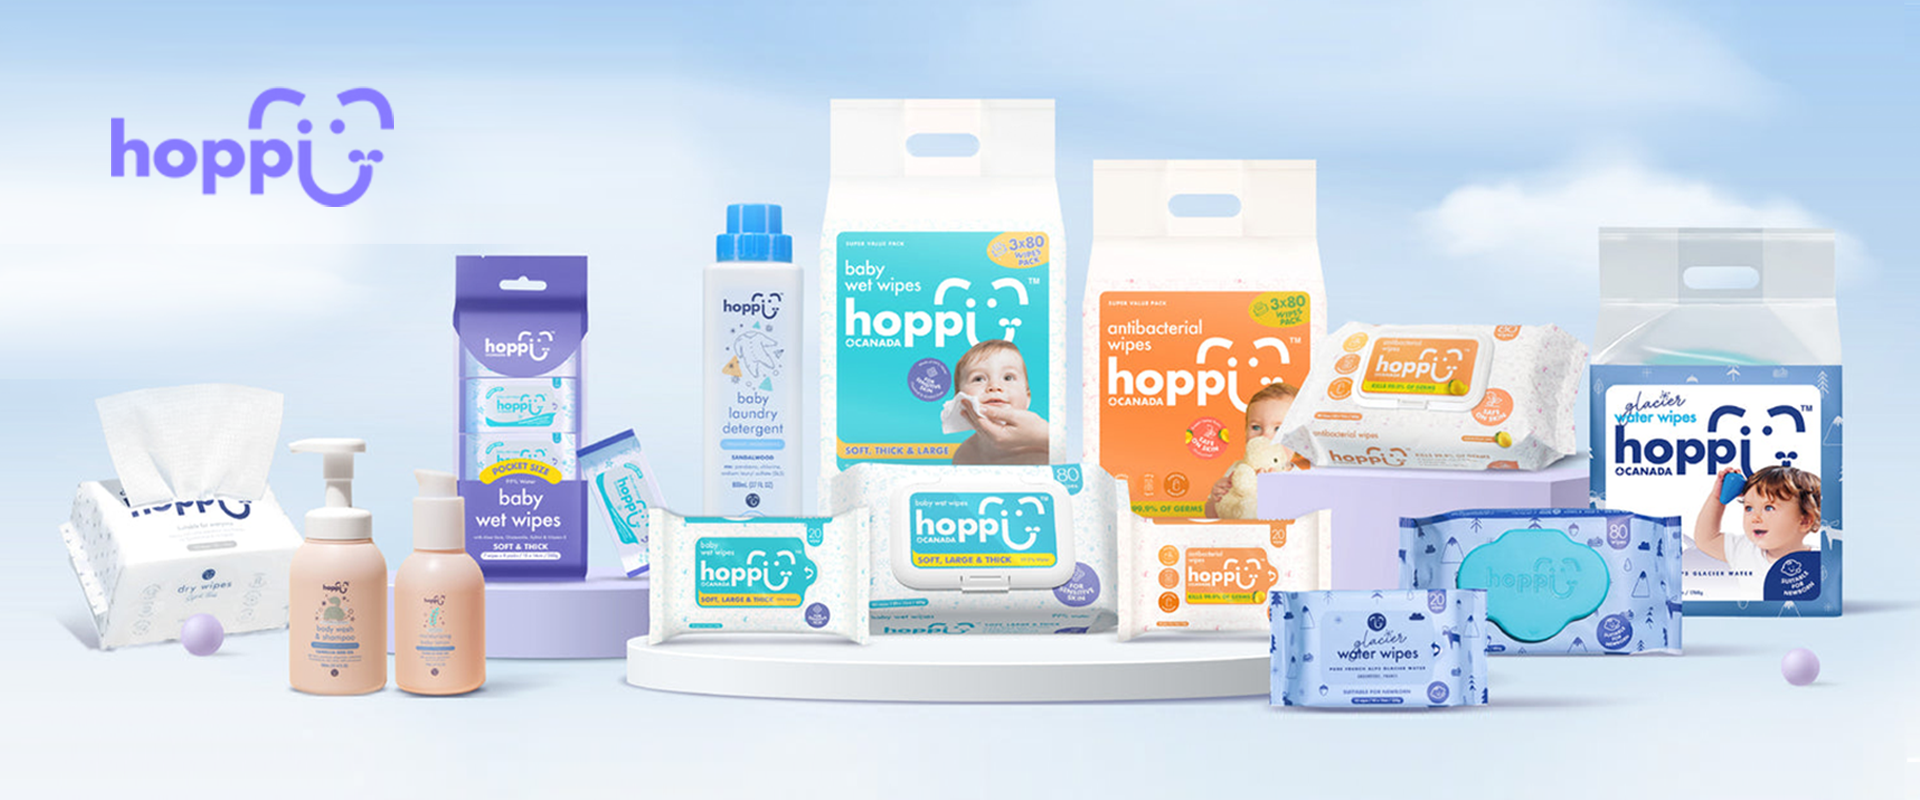 Hoppi New logo banner - desktop